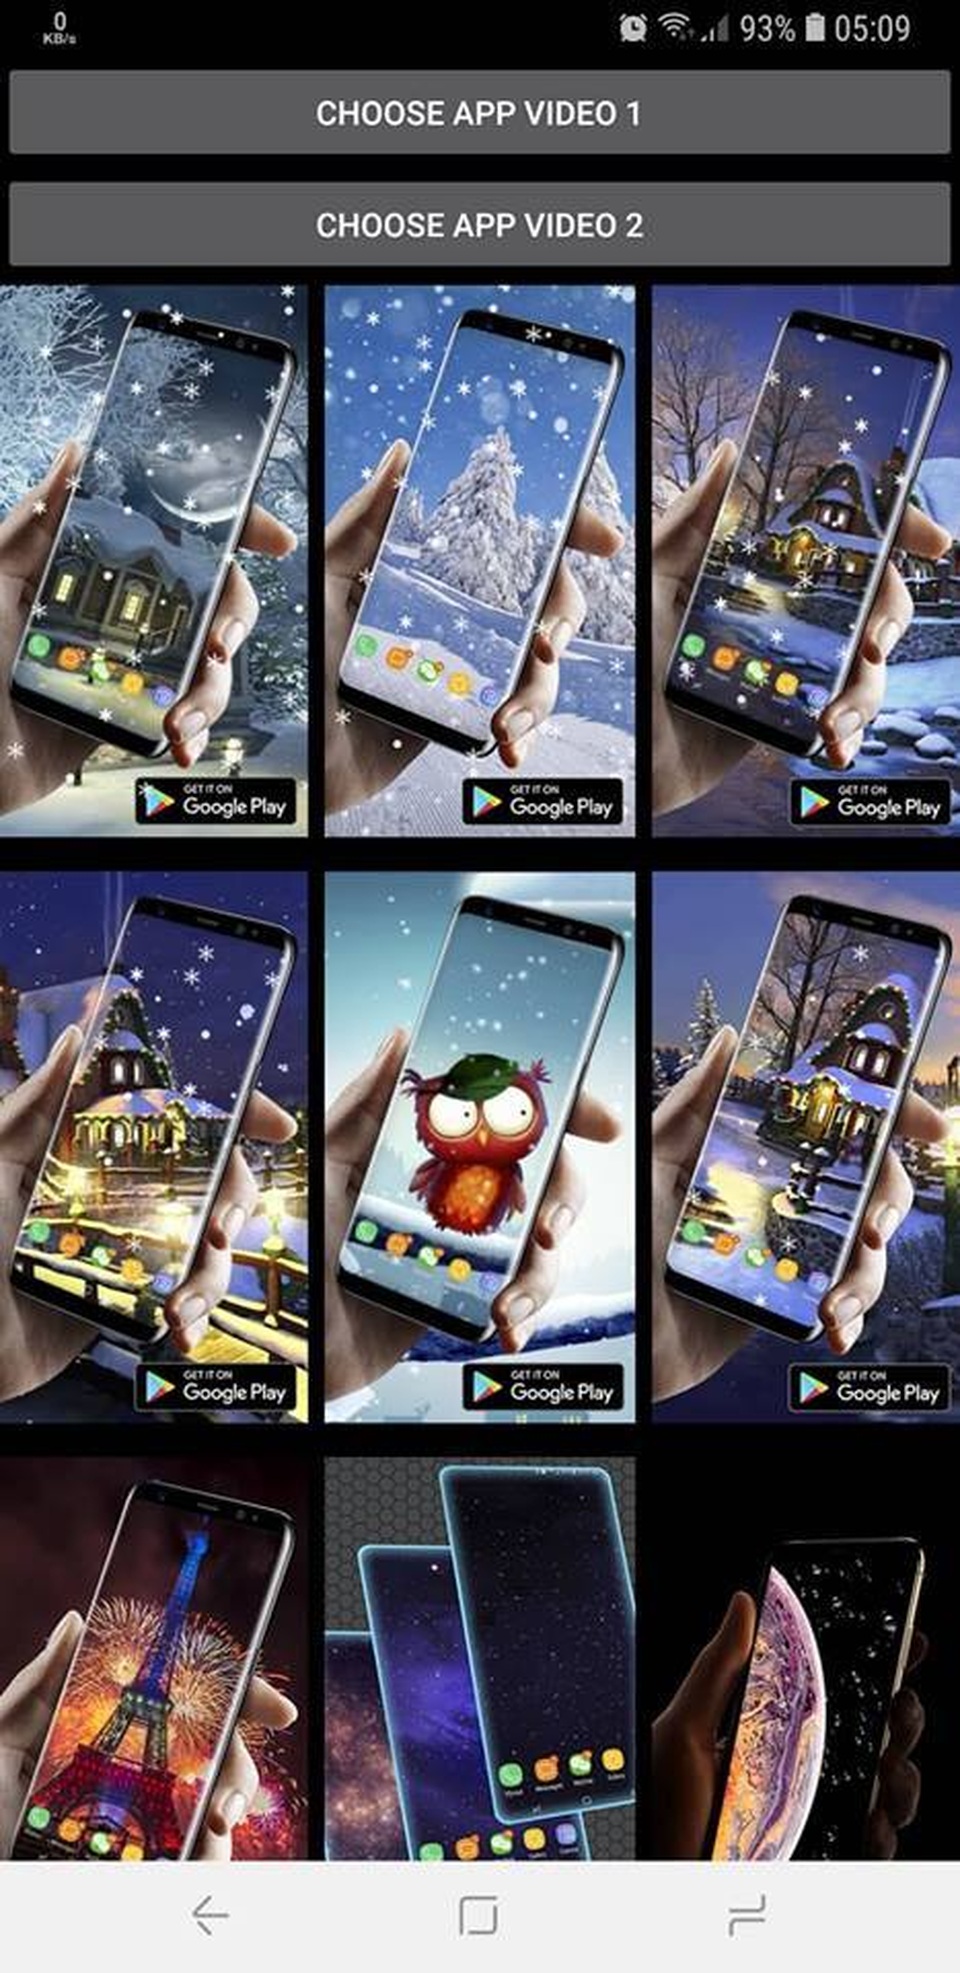 CHI TIẾT] Cách Đổi Hình Nền Điện Thoại iPhone, Android Hiệu Quả